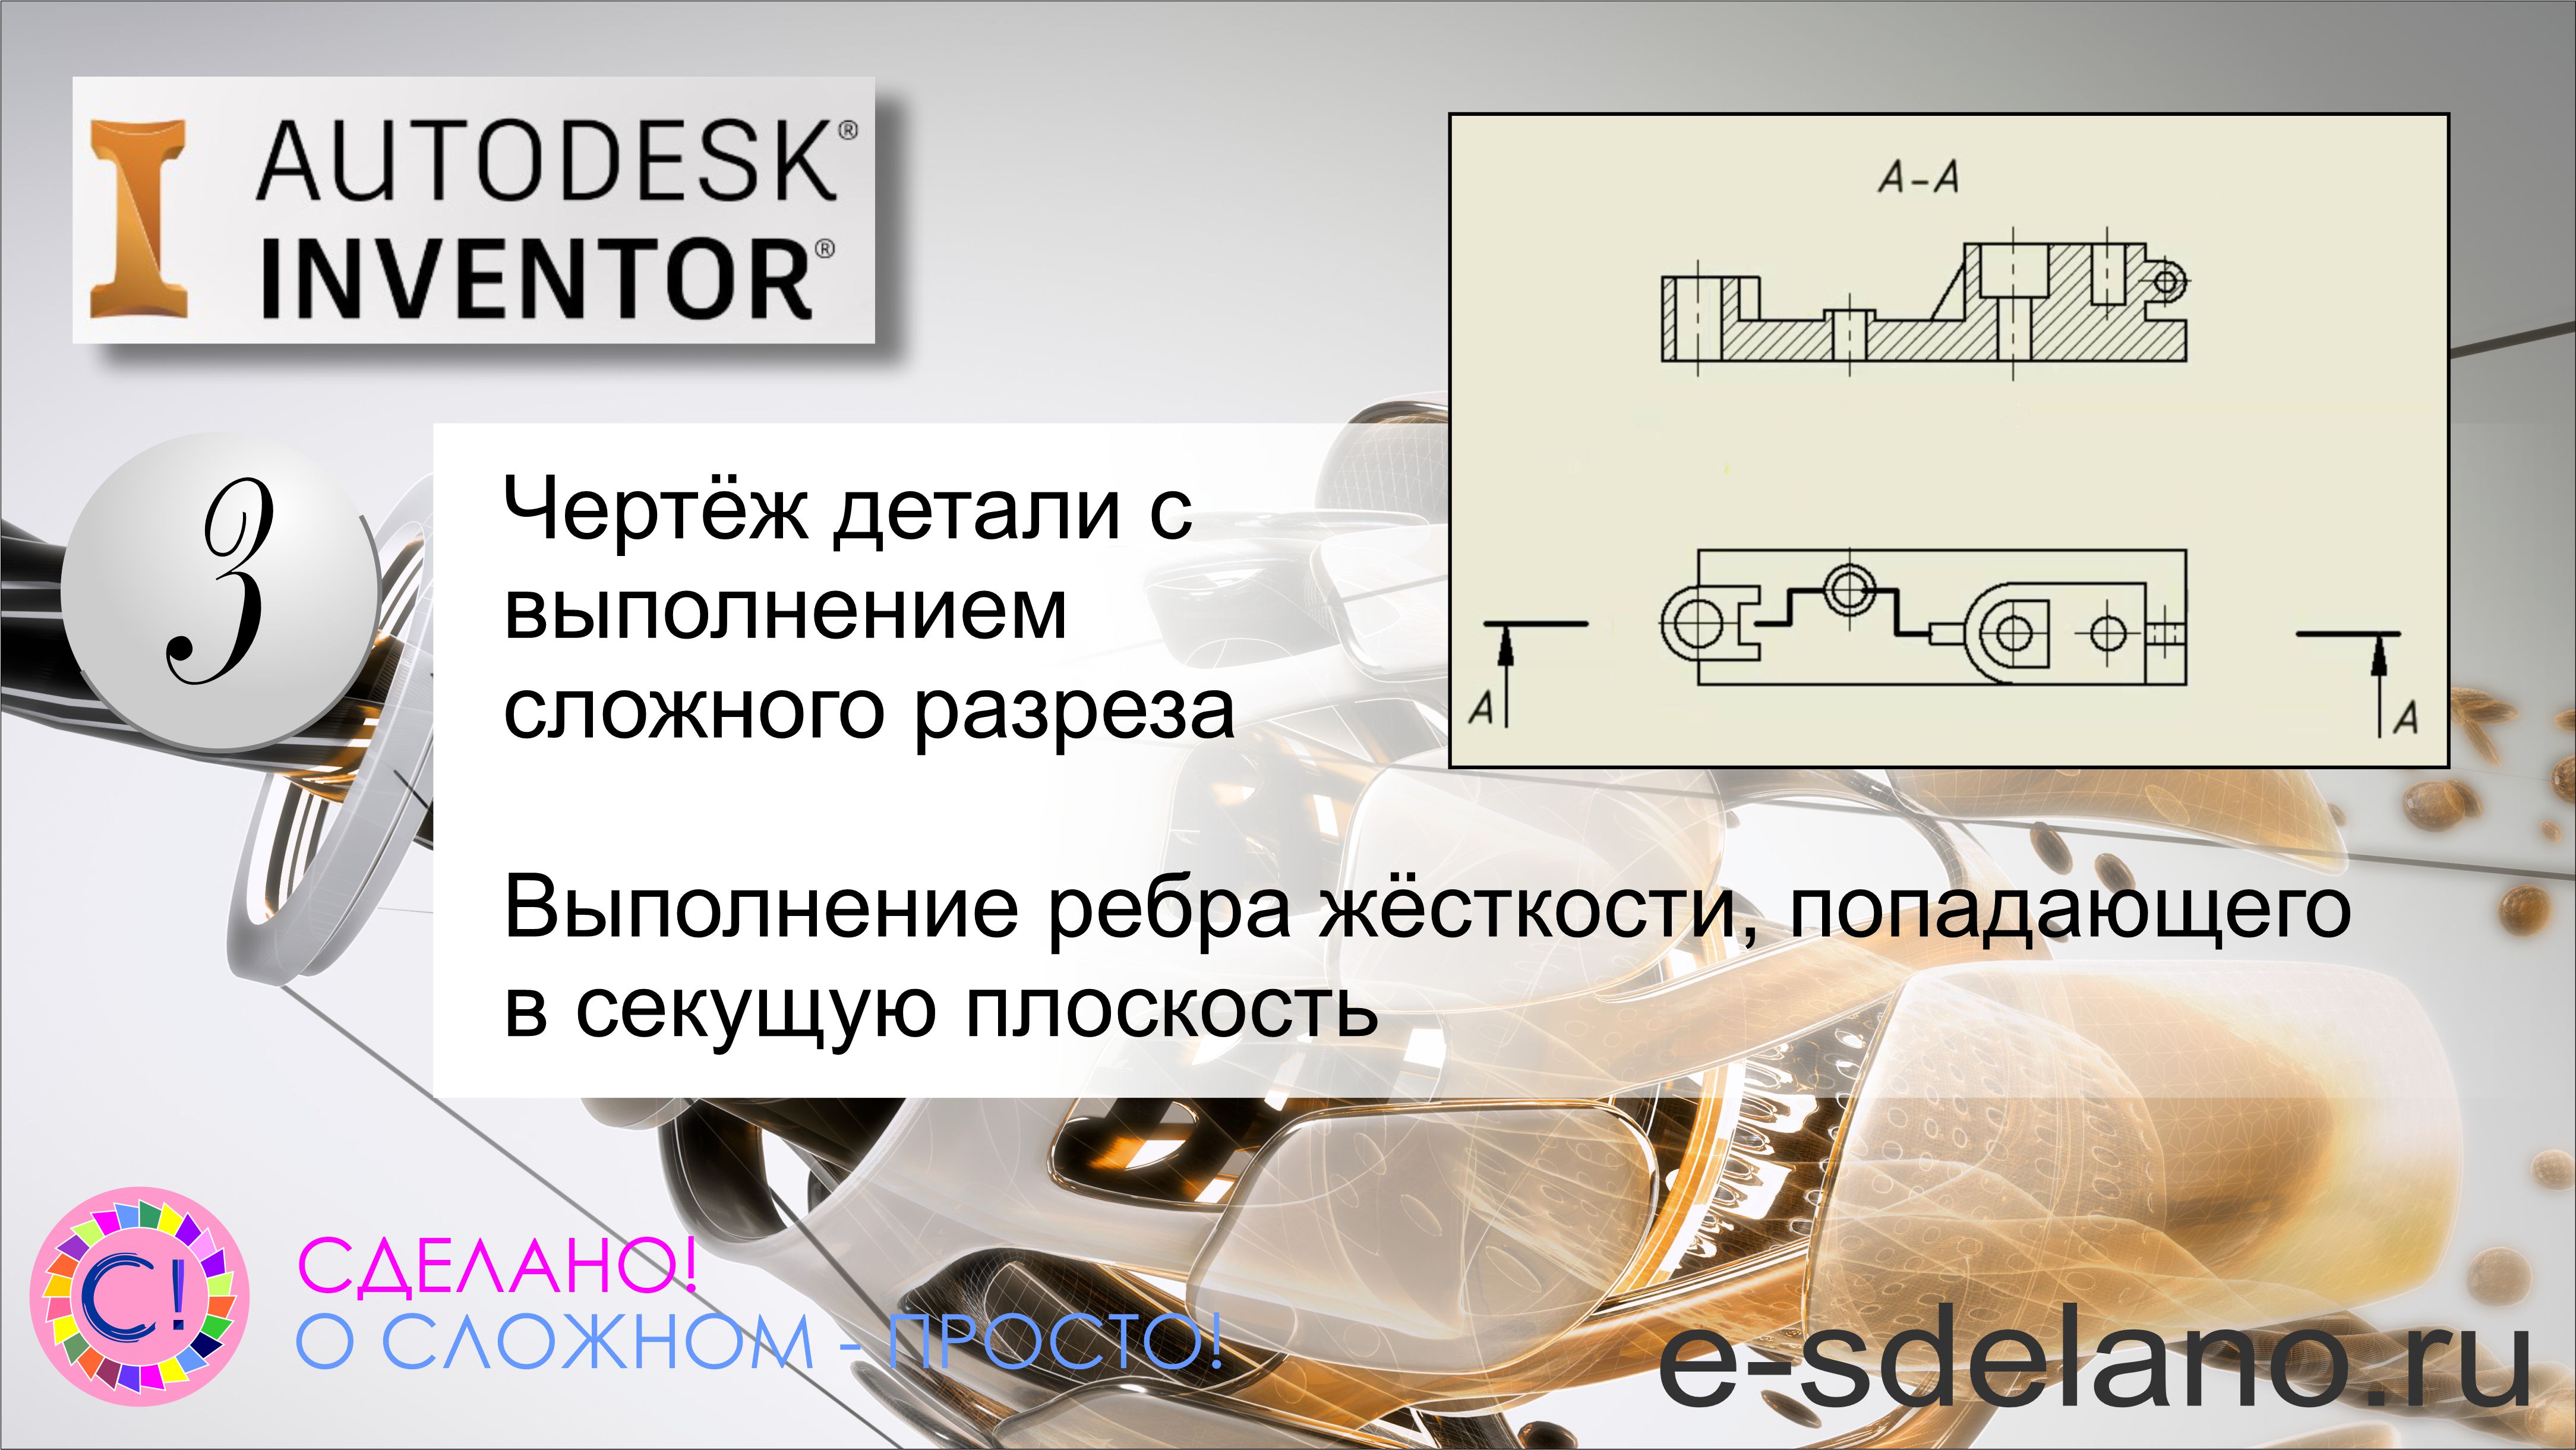 Autodesk Inventor. Cоздание чертежа детали с использованием сложного разреза, ребро жёсткости